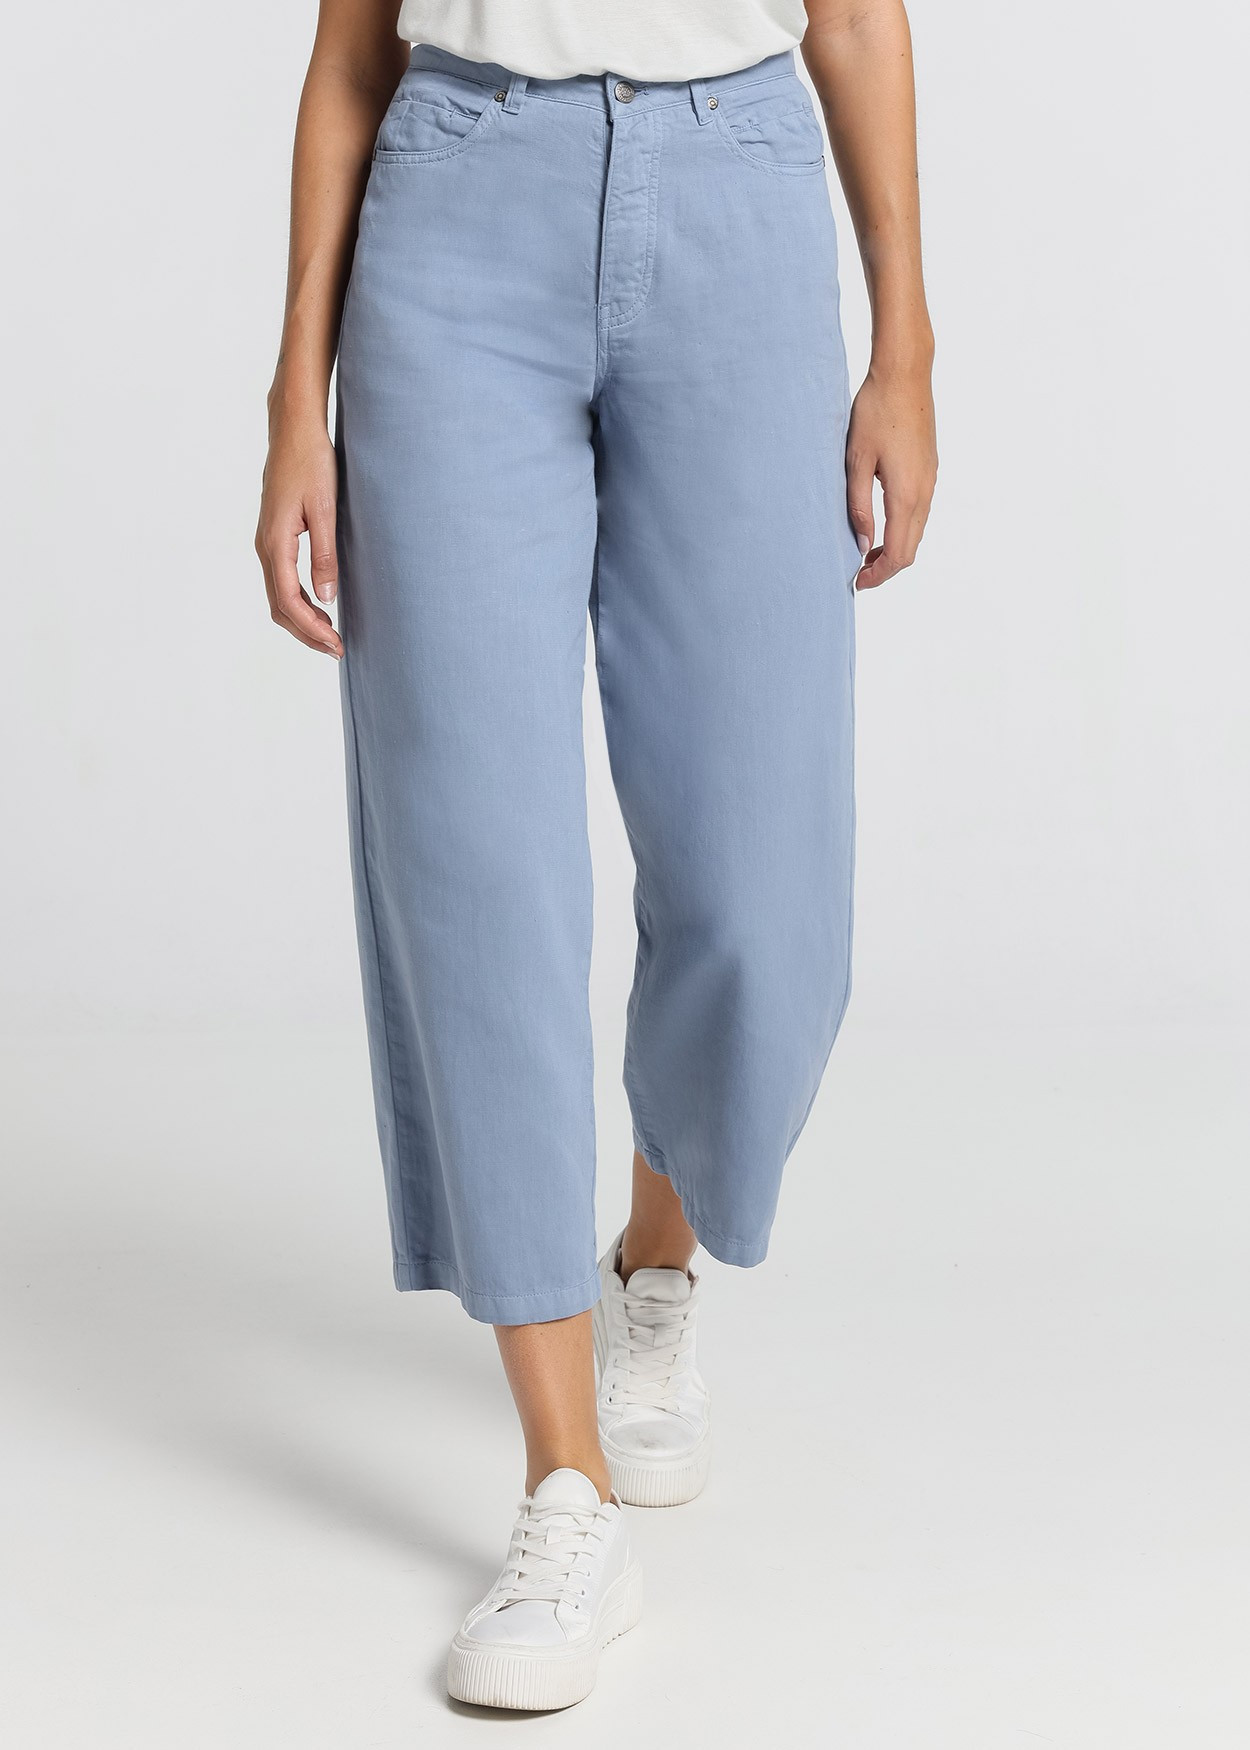 Jeans Aurora-Pêche Satin | Taille naturelle - Coupe droite large-court | Taille en pouces Cimarron